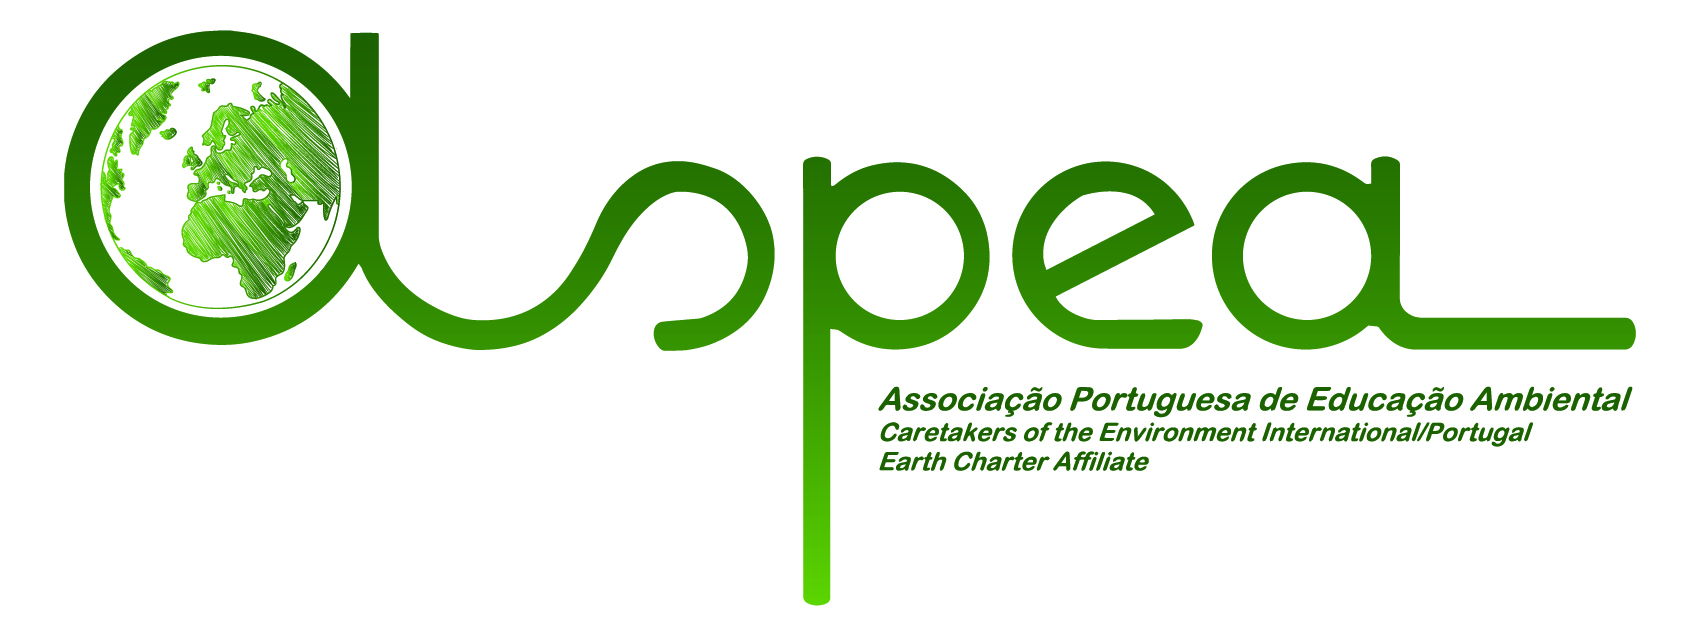 Associação Portuguesa de Educação Ambiental (ASPEA)